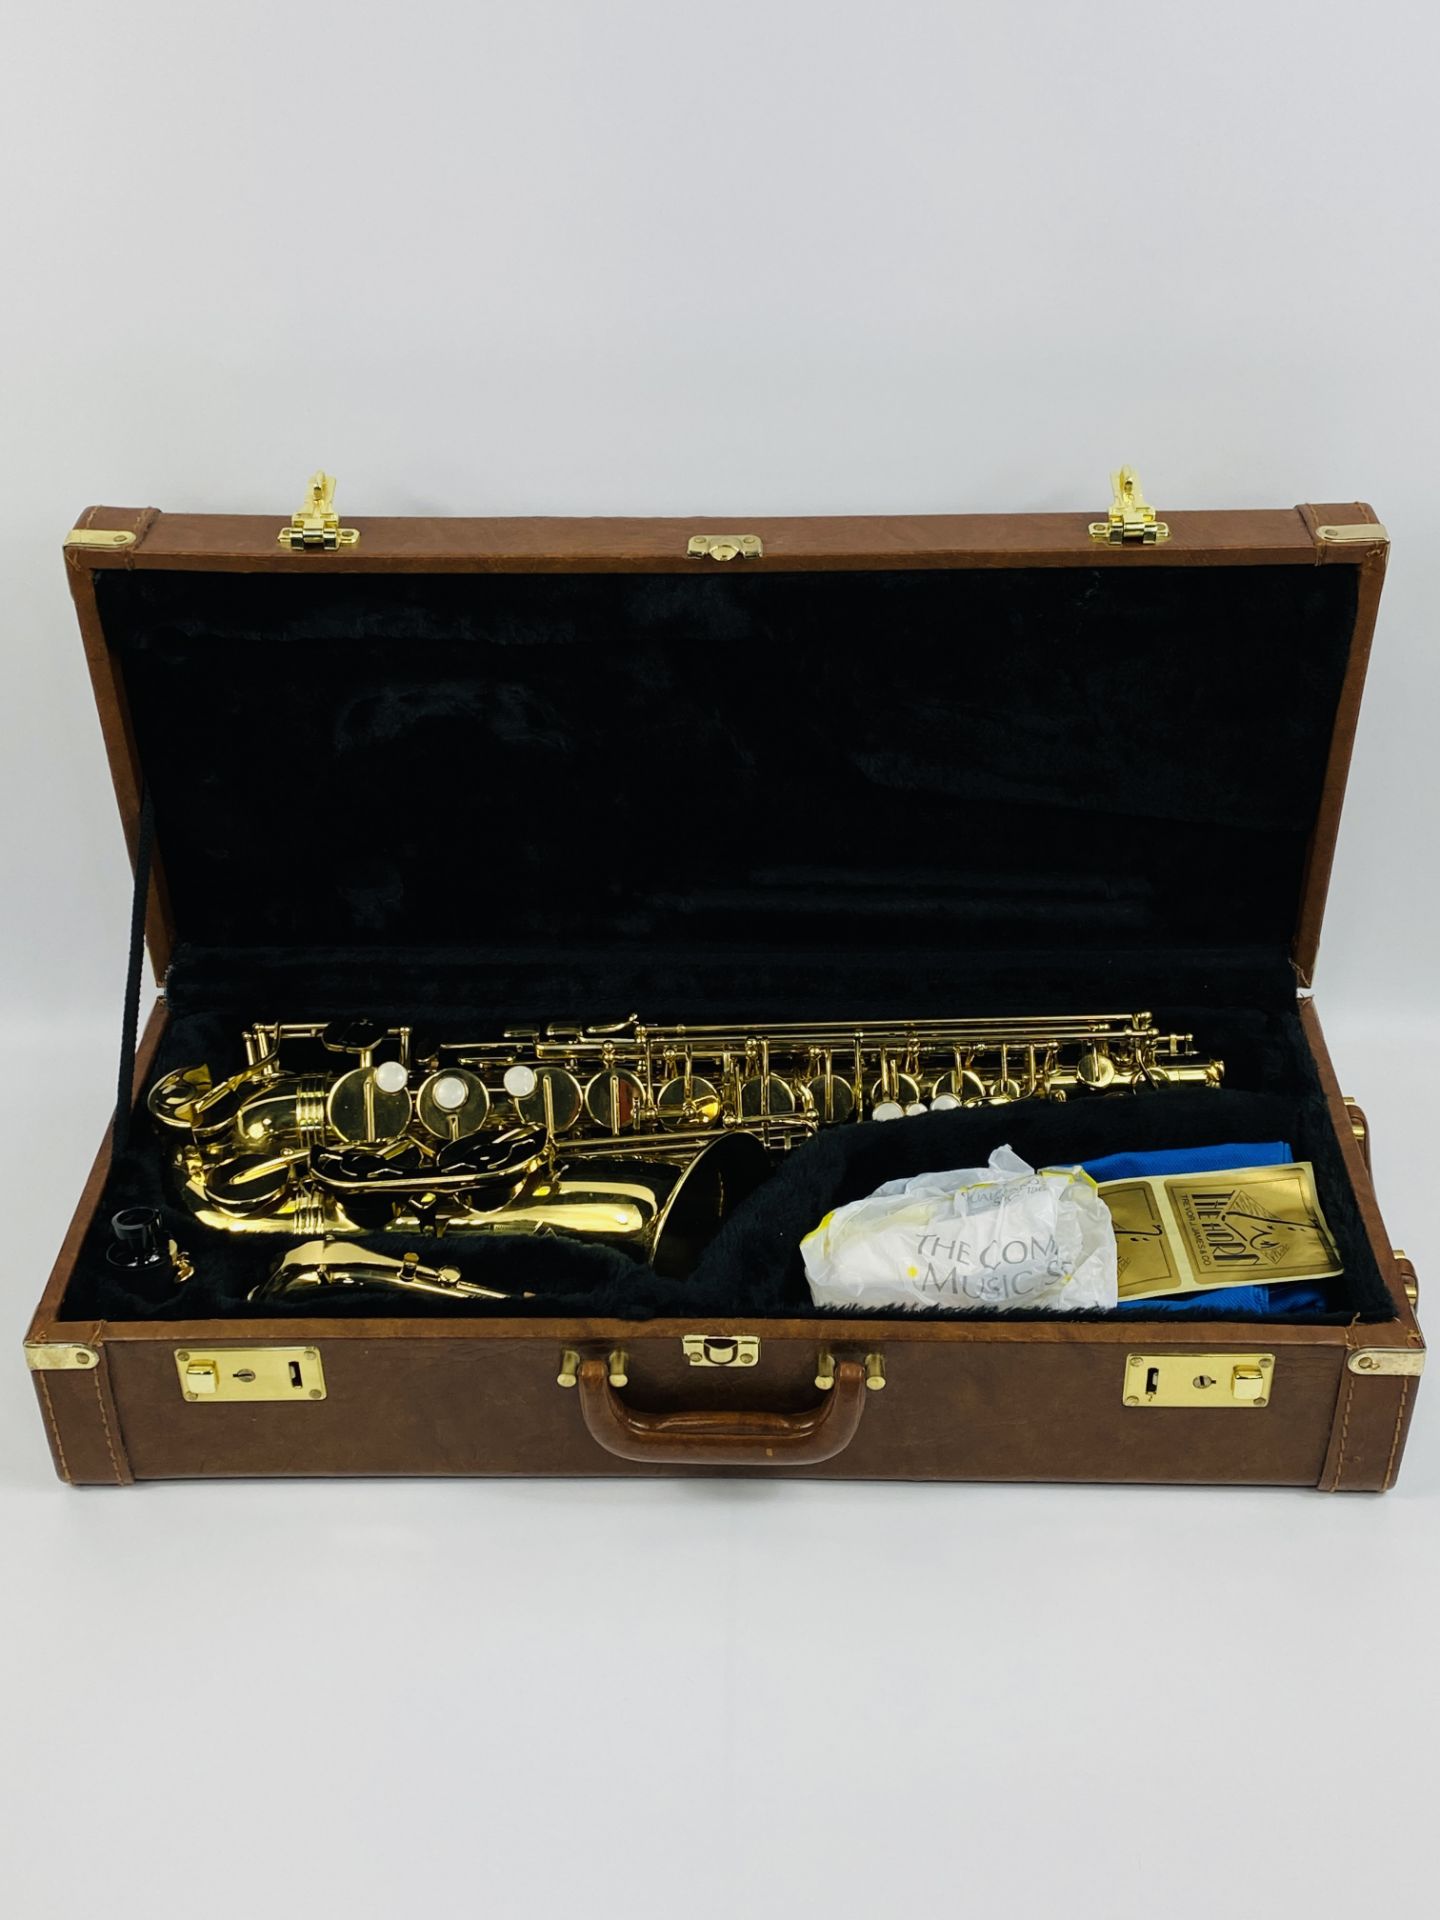 Trevor J James & Co, The Horn saxophone - Image 2 of 8